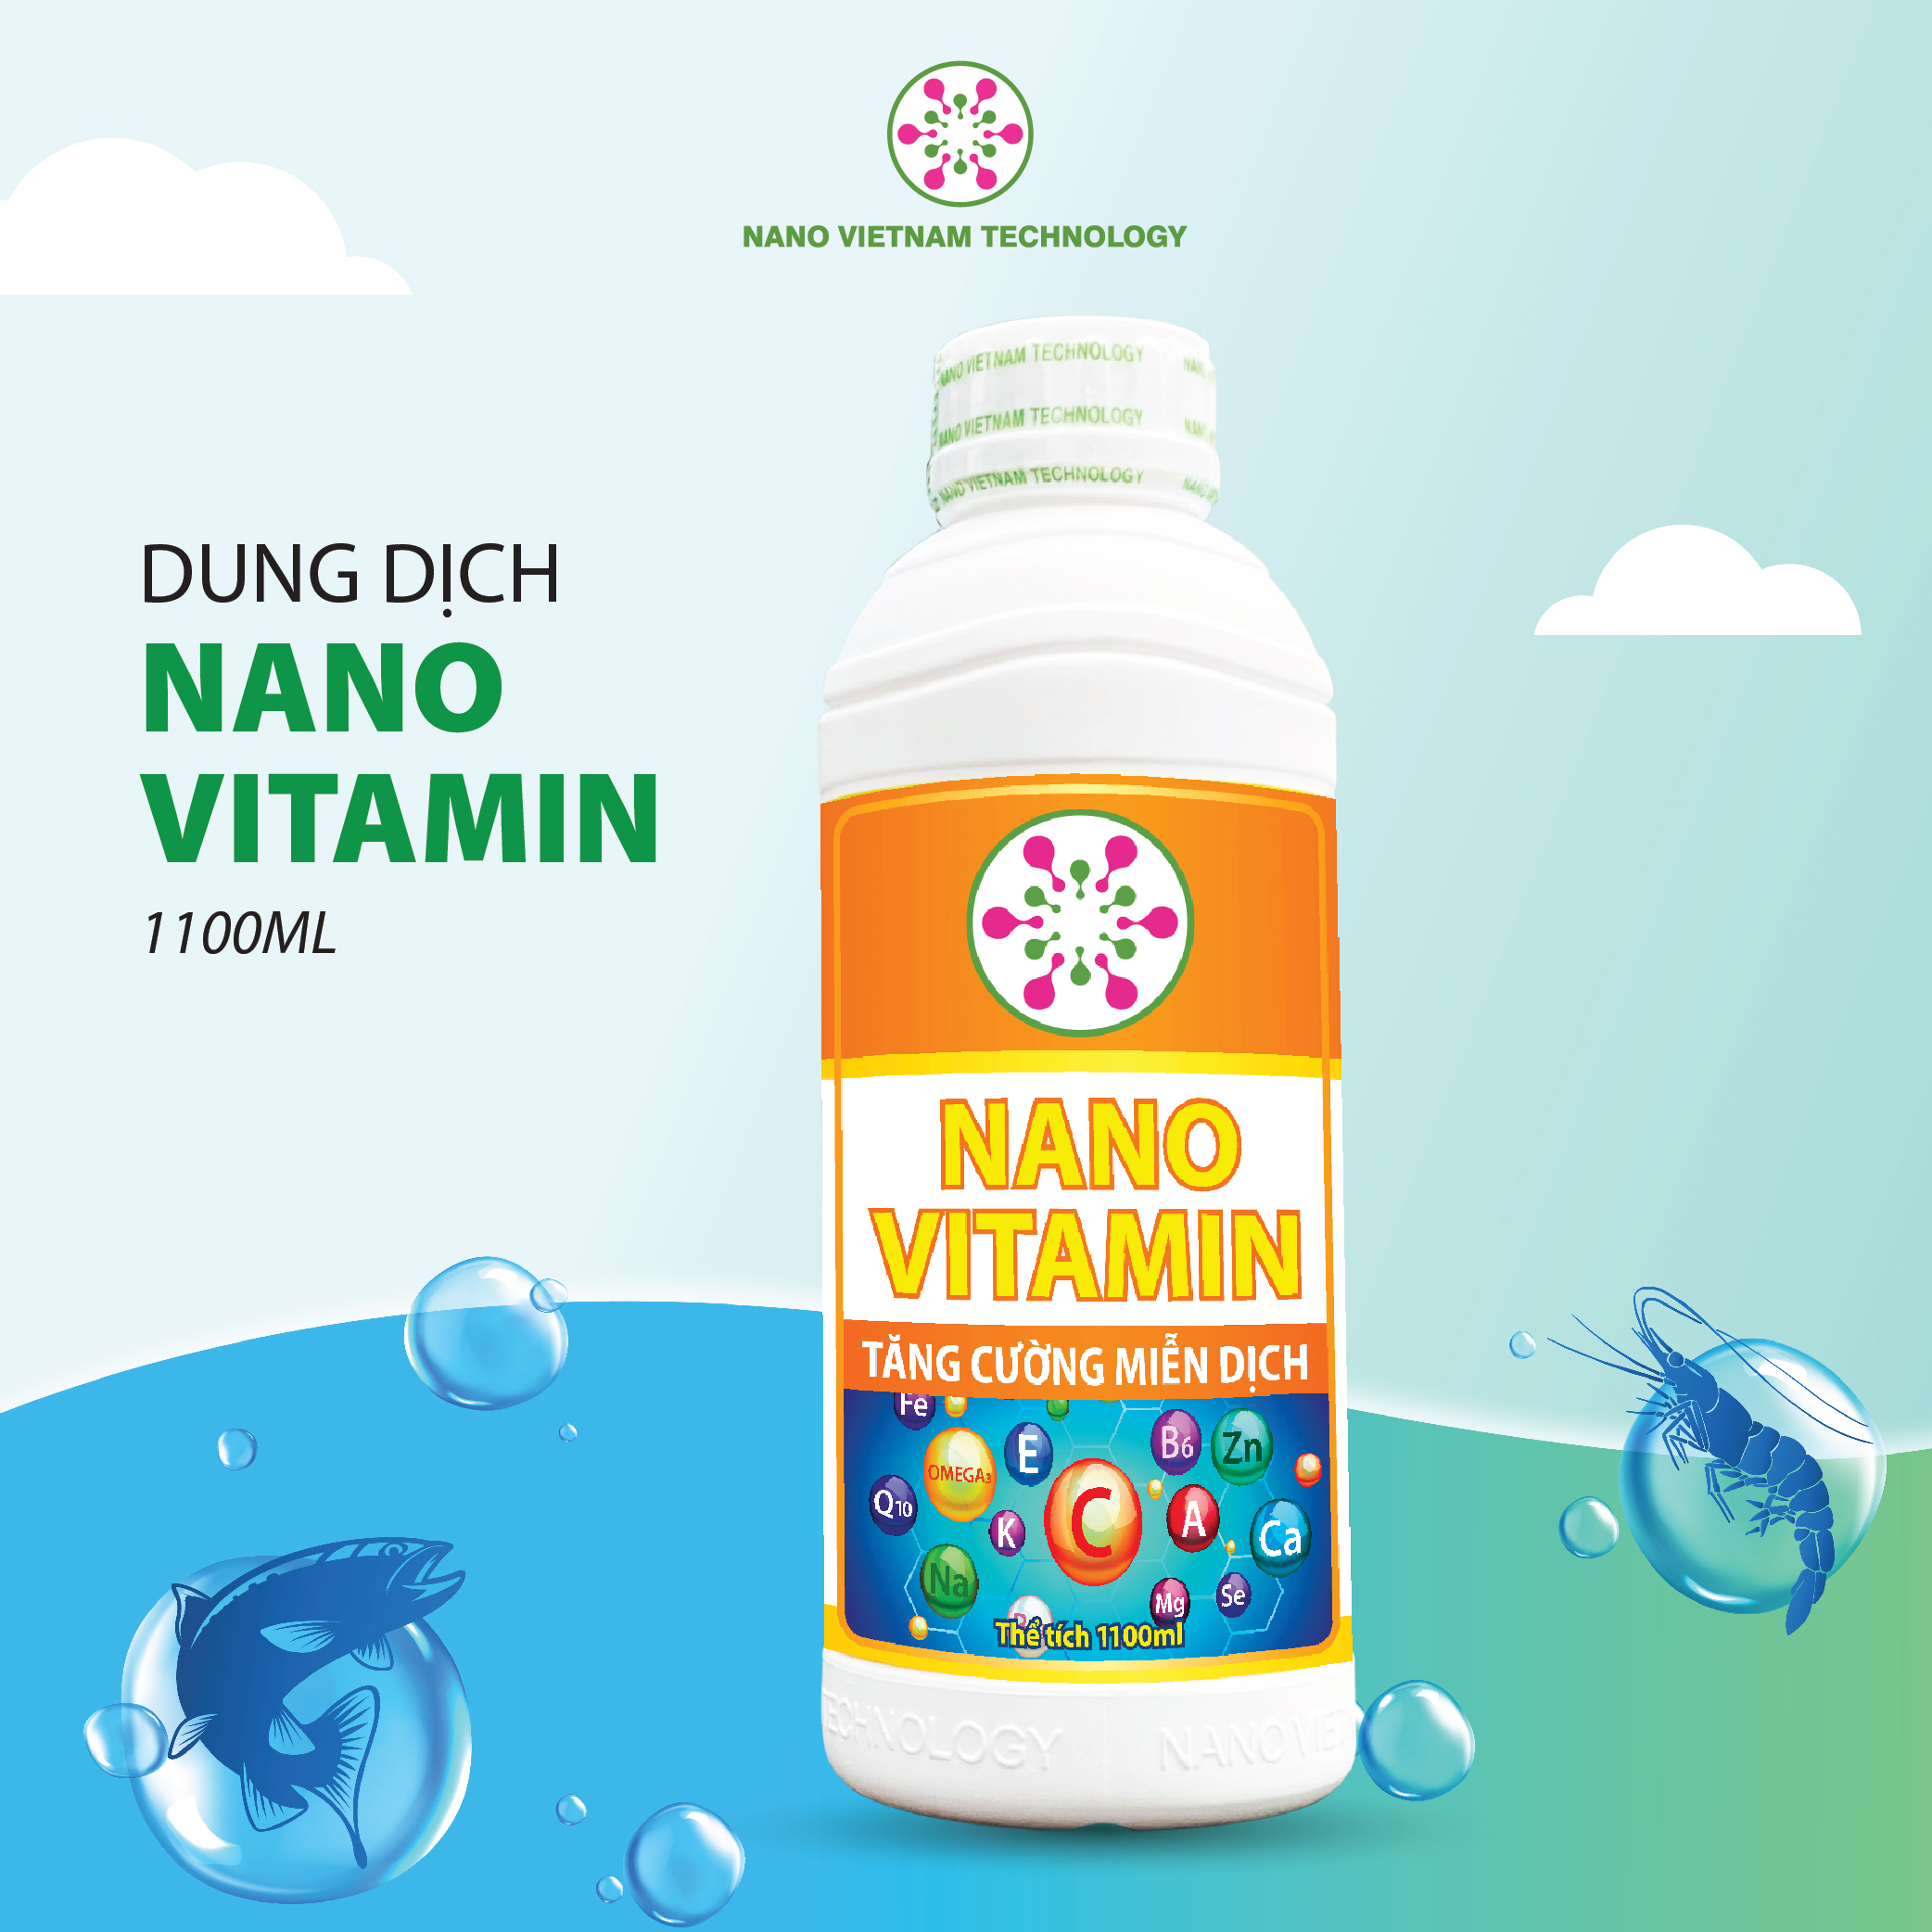 Nano Vitamin Vietnam Tech giúp tôm khoẻ mạnh phát triển nhanh 1100ml